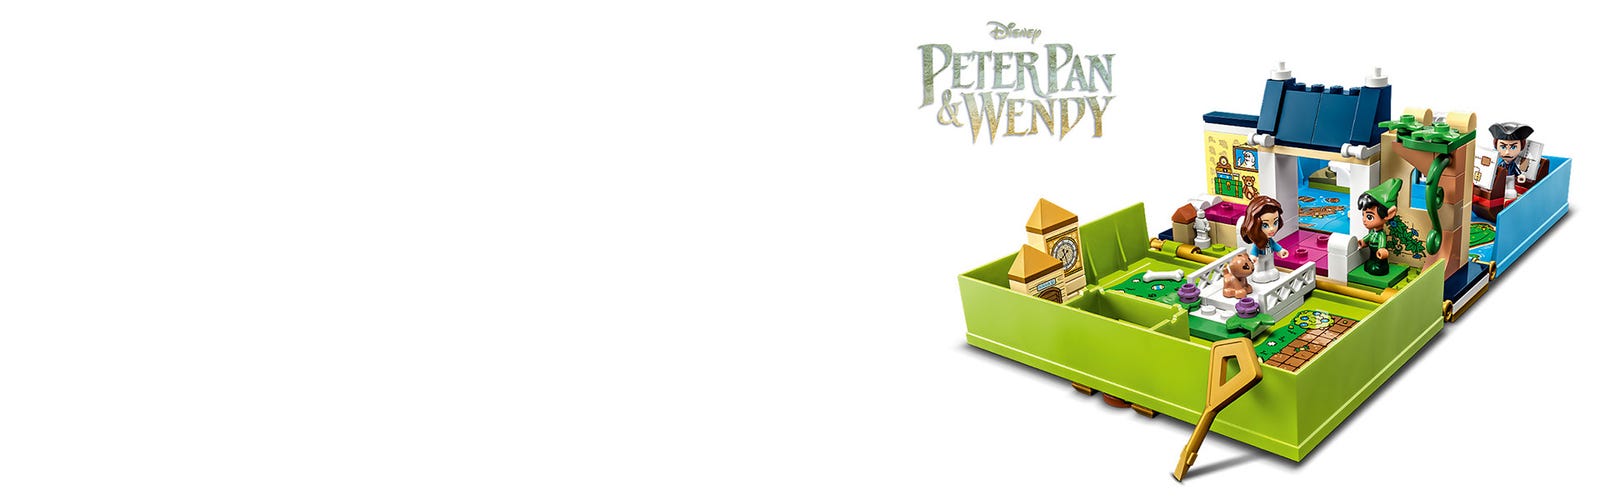 Peter Pan & Wendy's Storybook Adventure 43220, Disney™